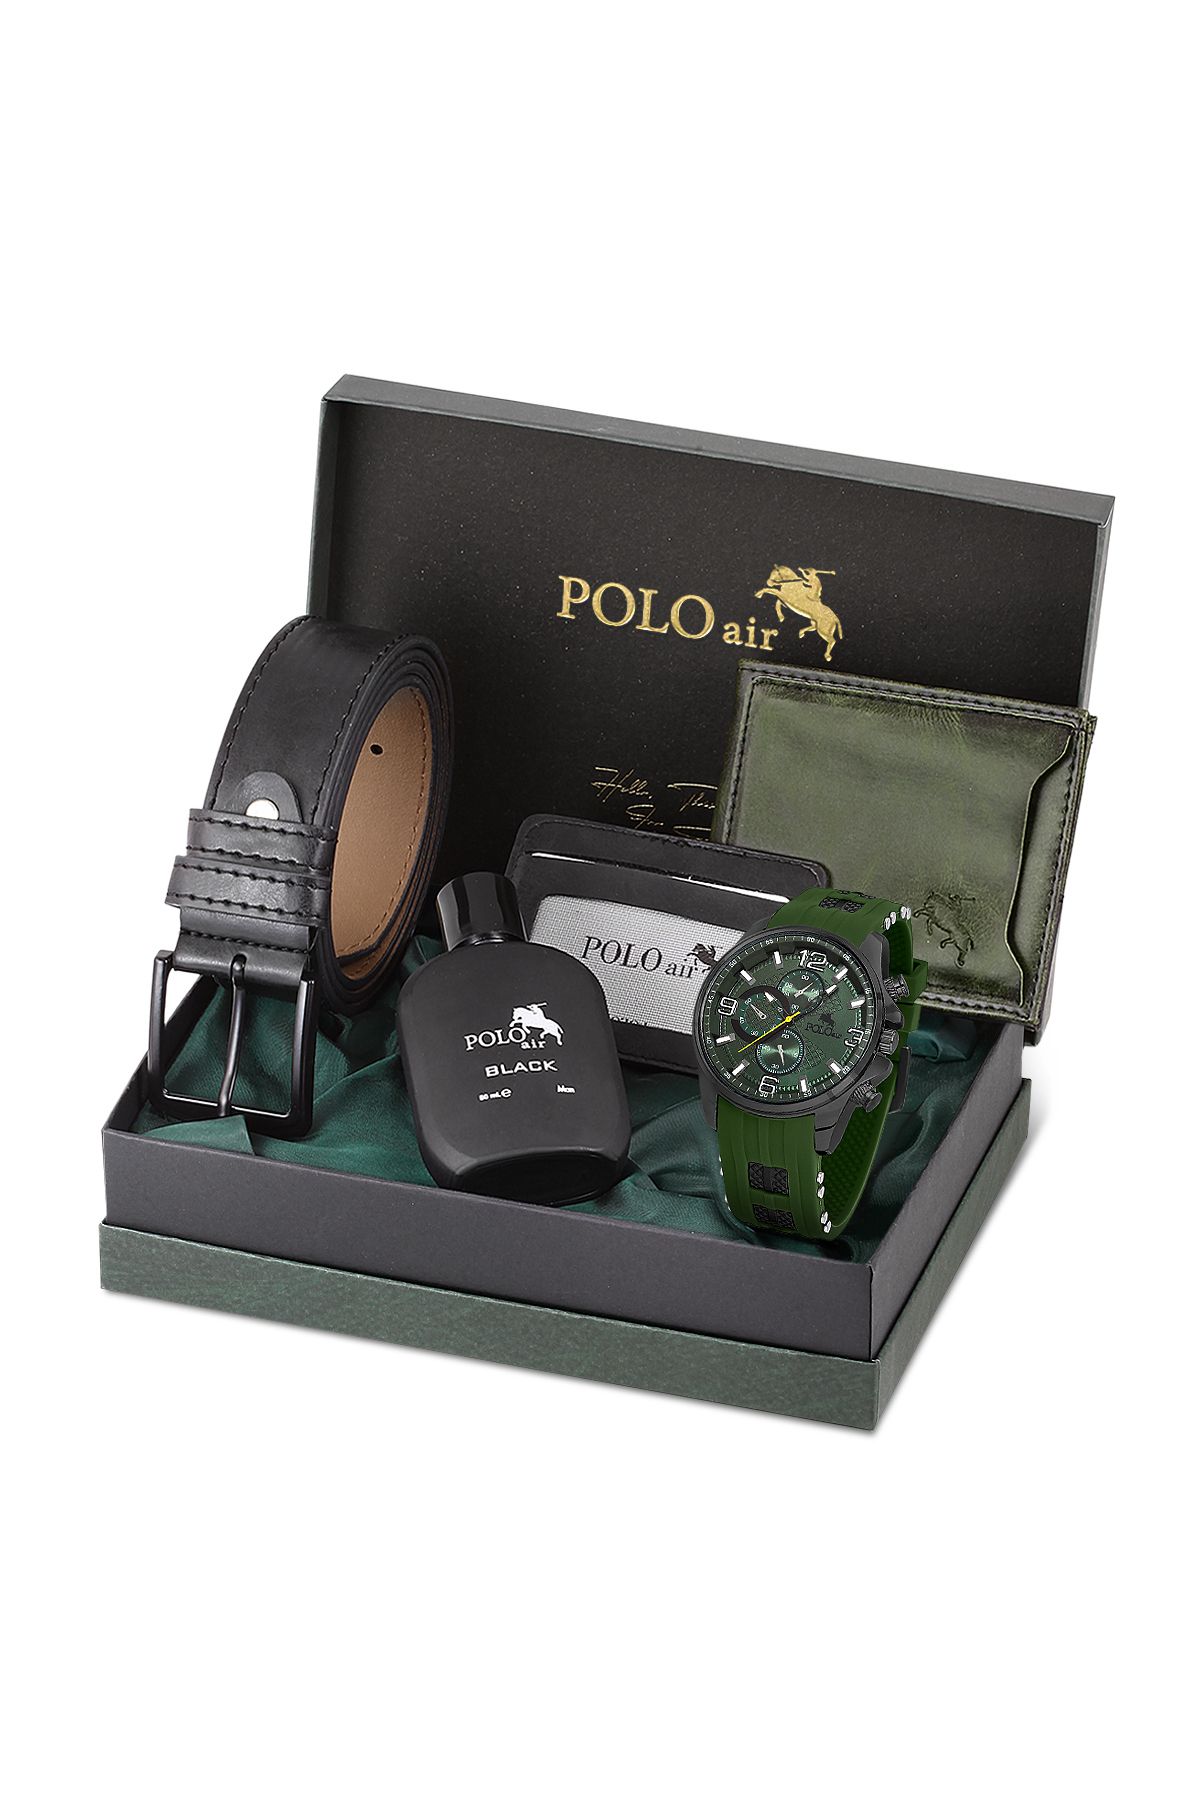 polo air Erkek Silikon Kordon Kol Saati Cüzdan Kemer Kartlık Parfüm Spor Kombin Yeşil Set PL-0862E5